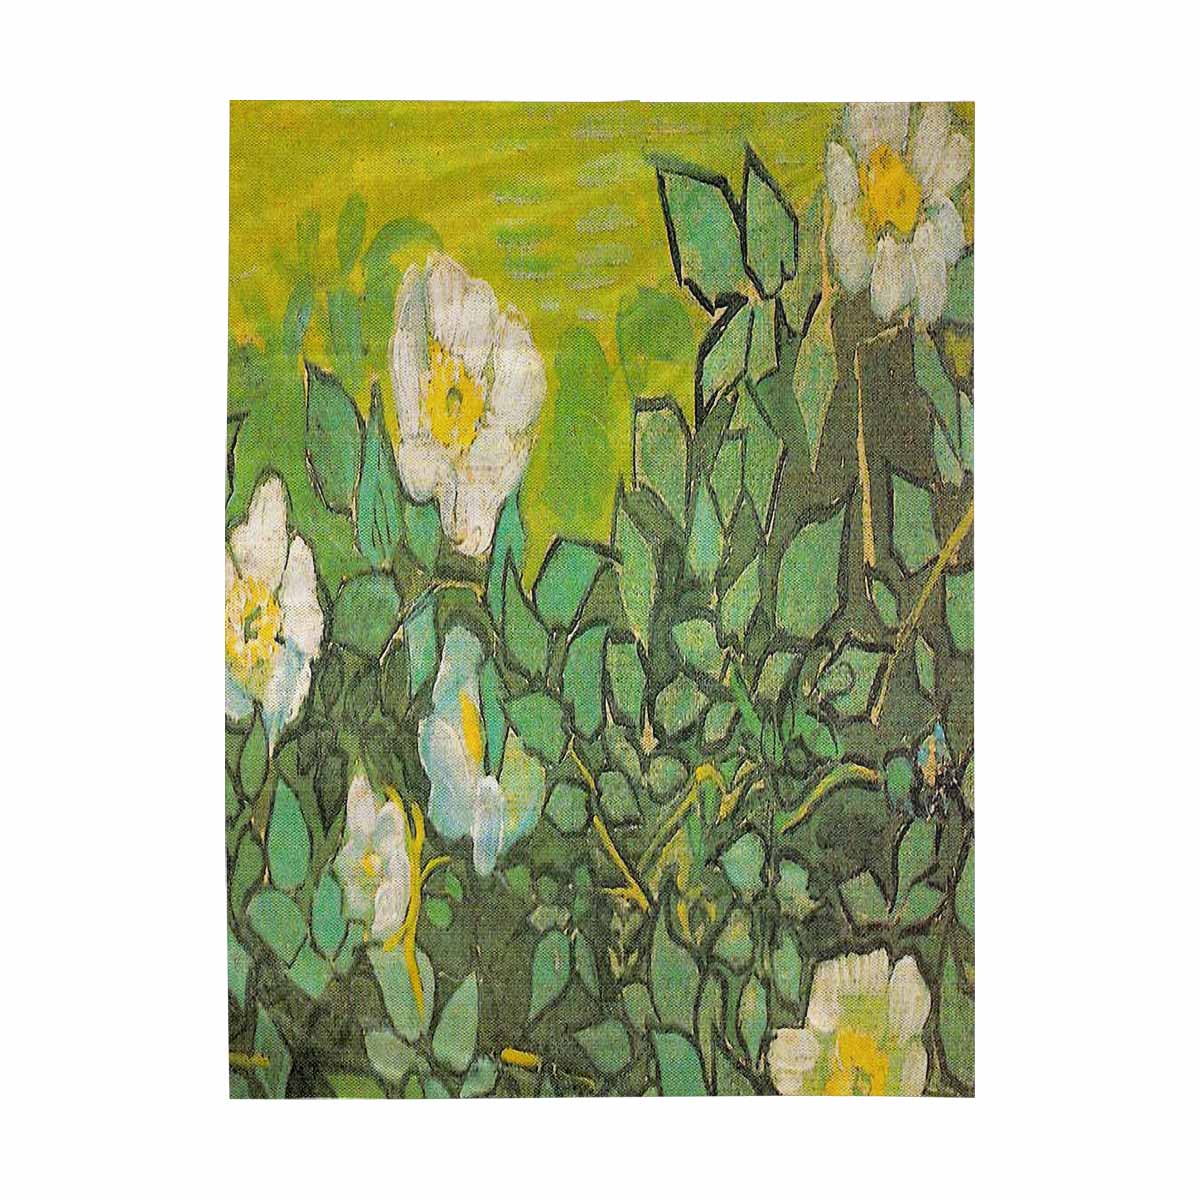 Vintage floral TAPESTRY, LARGE 60 x 80 in, Vertical, Design 01